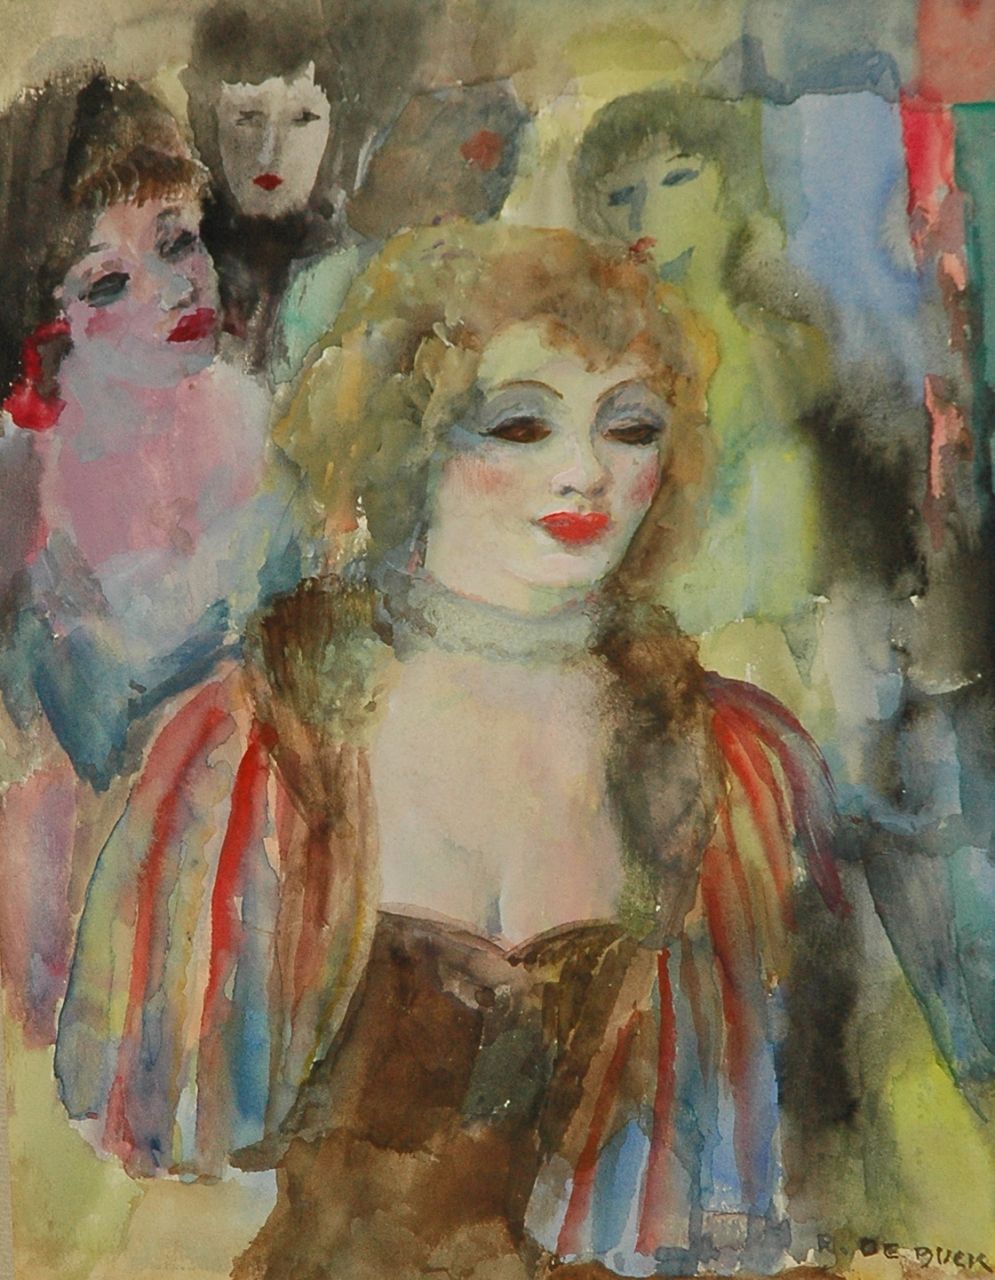 Buck R. de | Raphaël de Buck, Four ladies, watercolour on paper 31.0 x 23.0 cm, signed l.r.